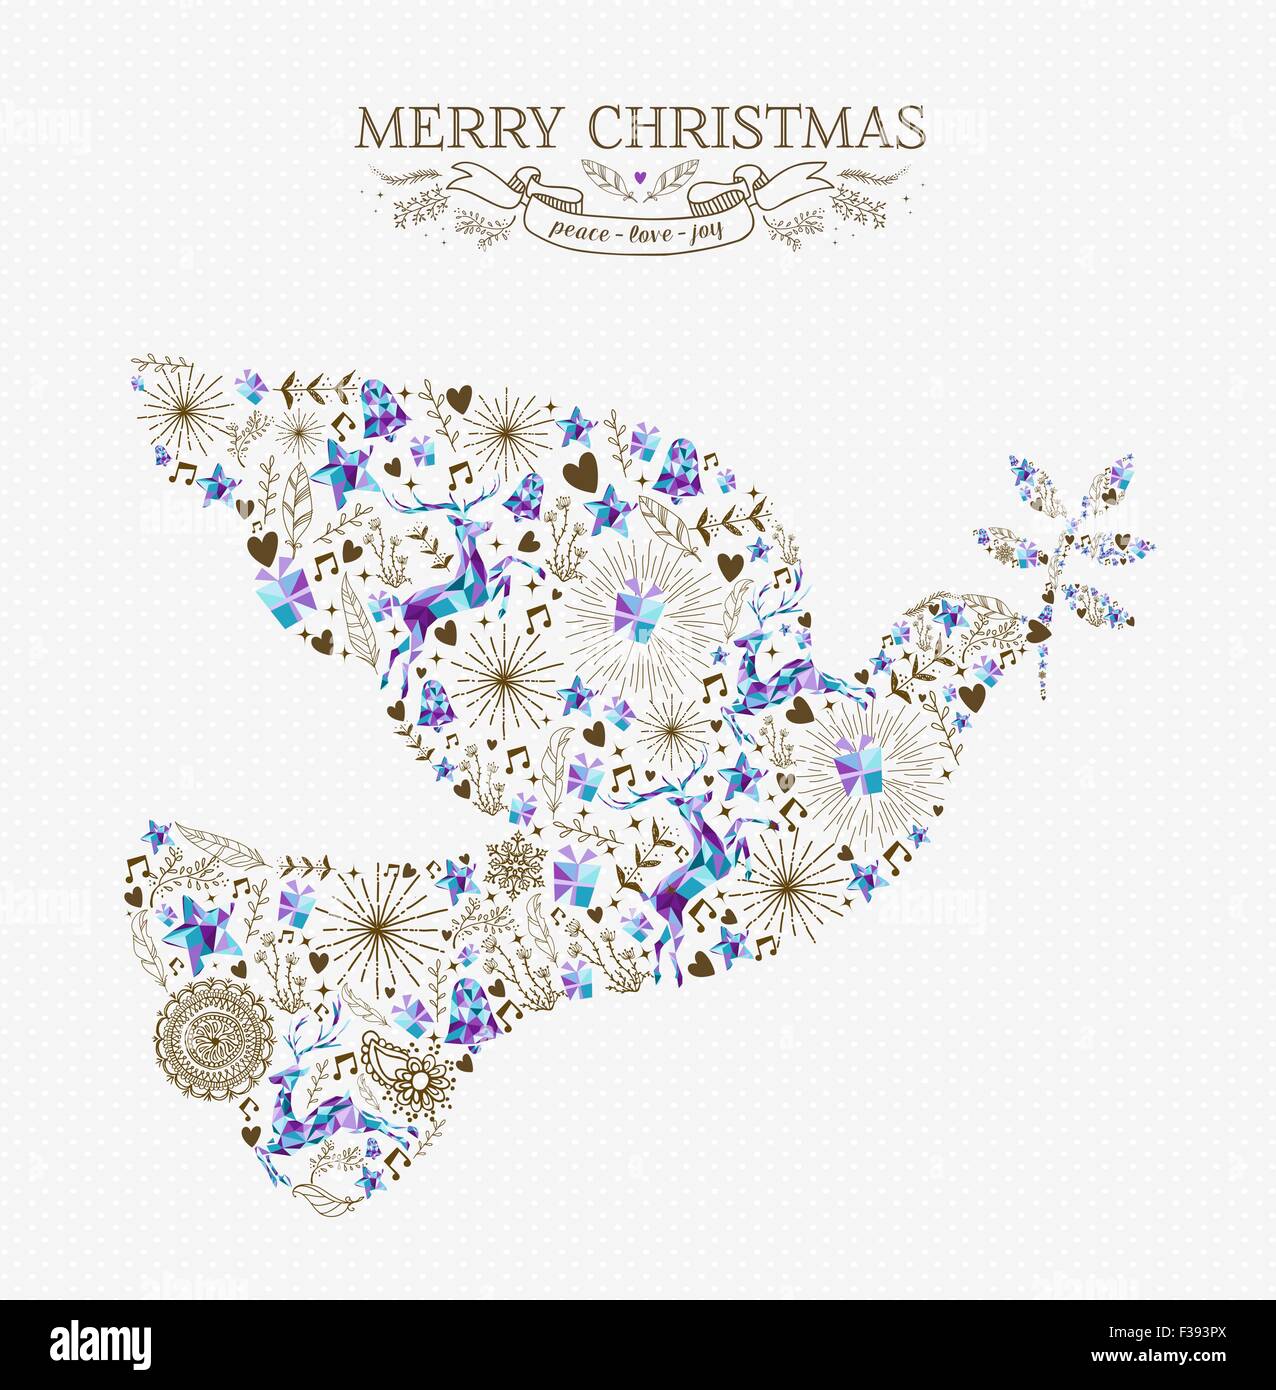 Buon Natale di pace in forma di colomba composizione con le renne e vintage elementi di vacanza. Ideale per natale biglietto di auguri o di inviti. Illustrazione Vettoriale